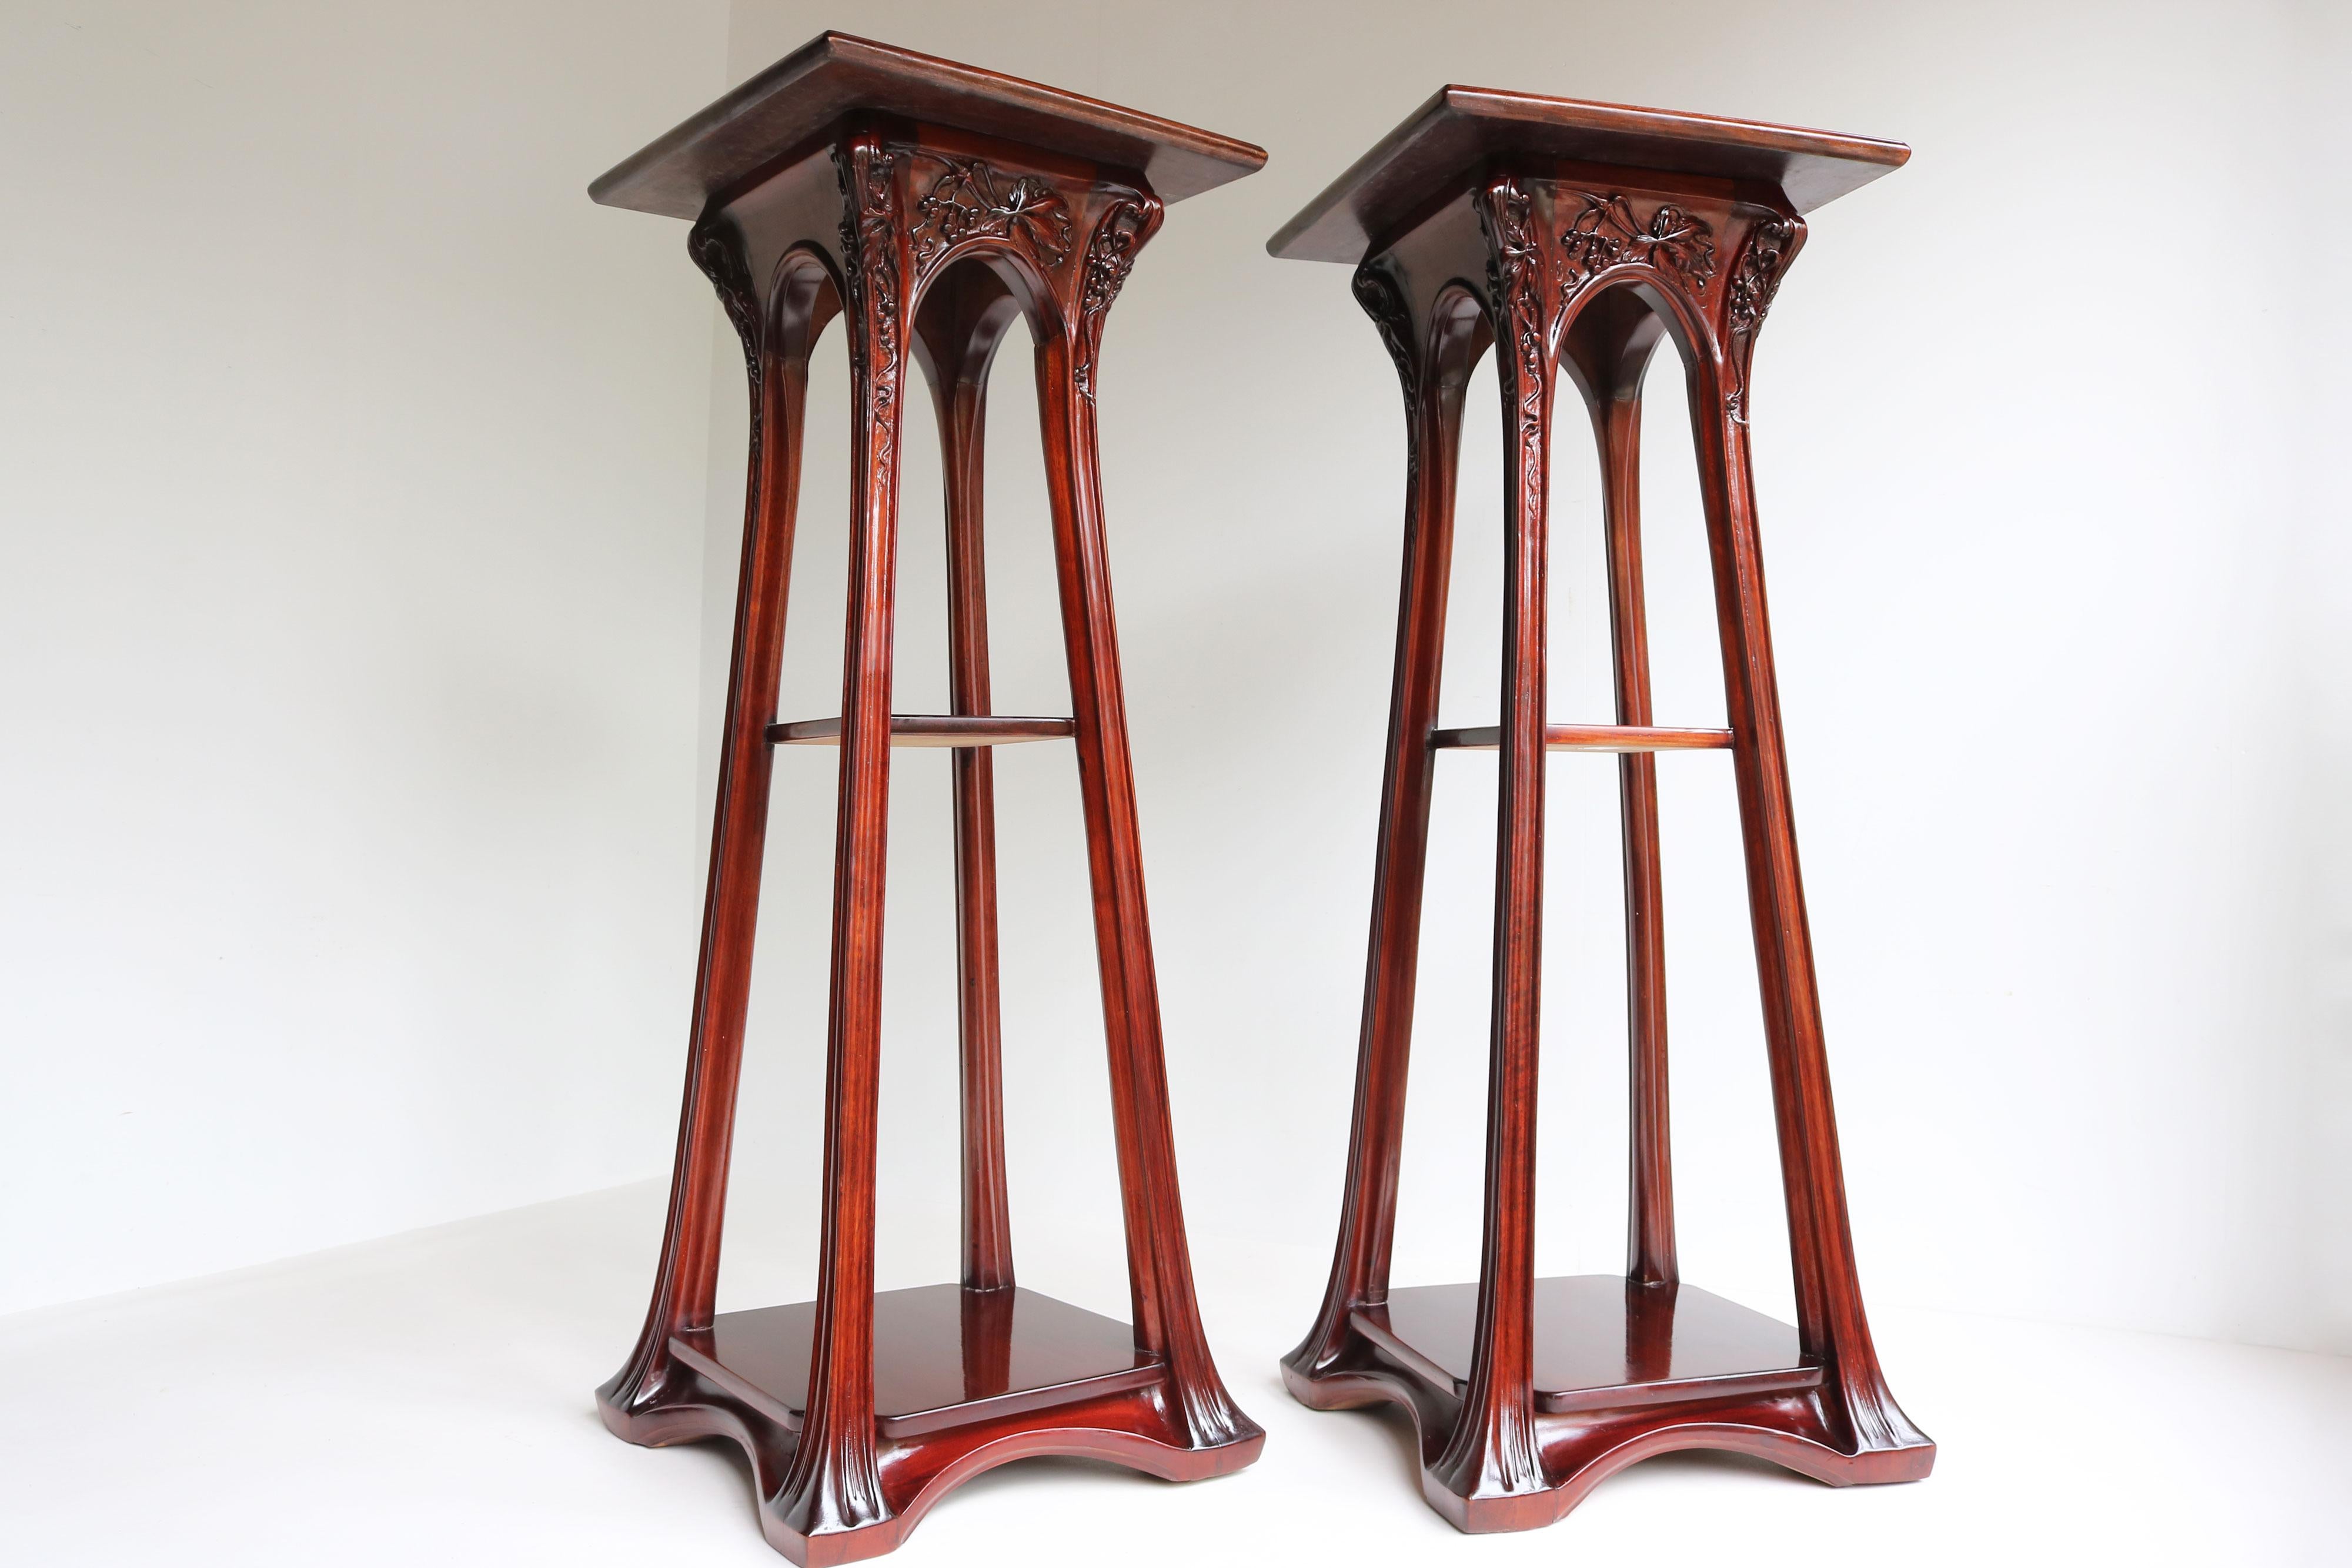 4 matching Art Nouveau plant stands / pedestals by Louis Majorelle Antique 1907 For Sale 8